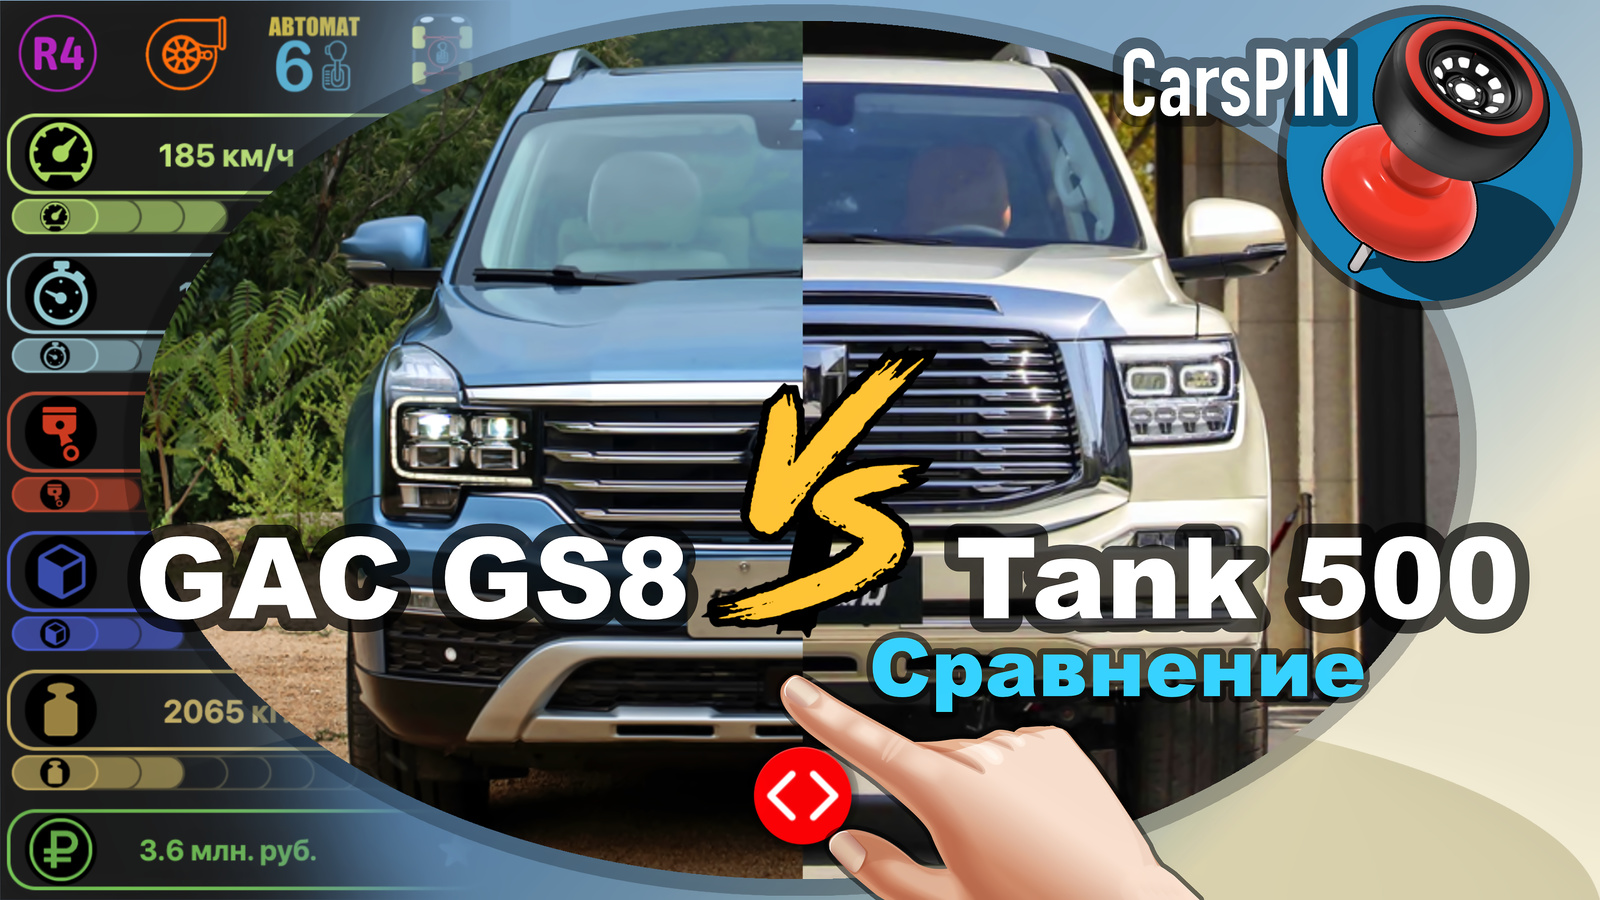 Видеосравнение автомобиля GAC GS8